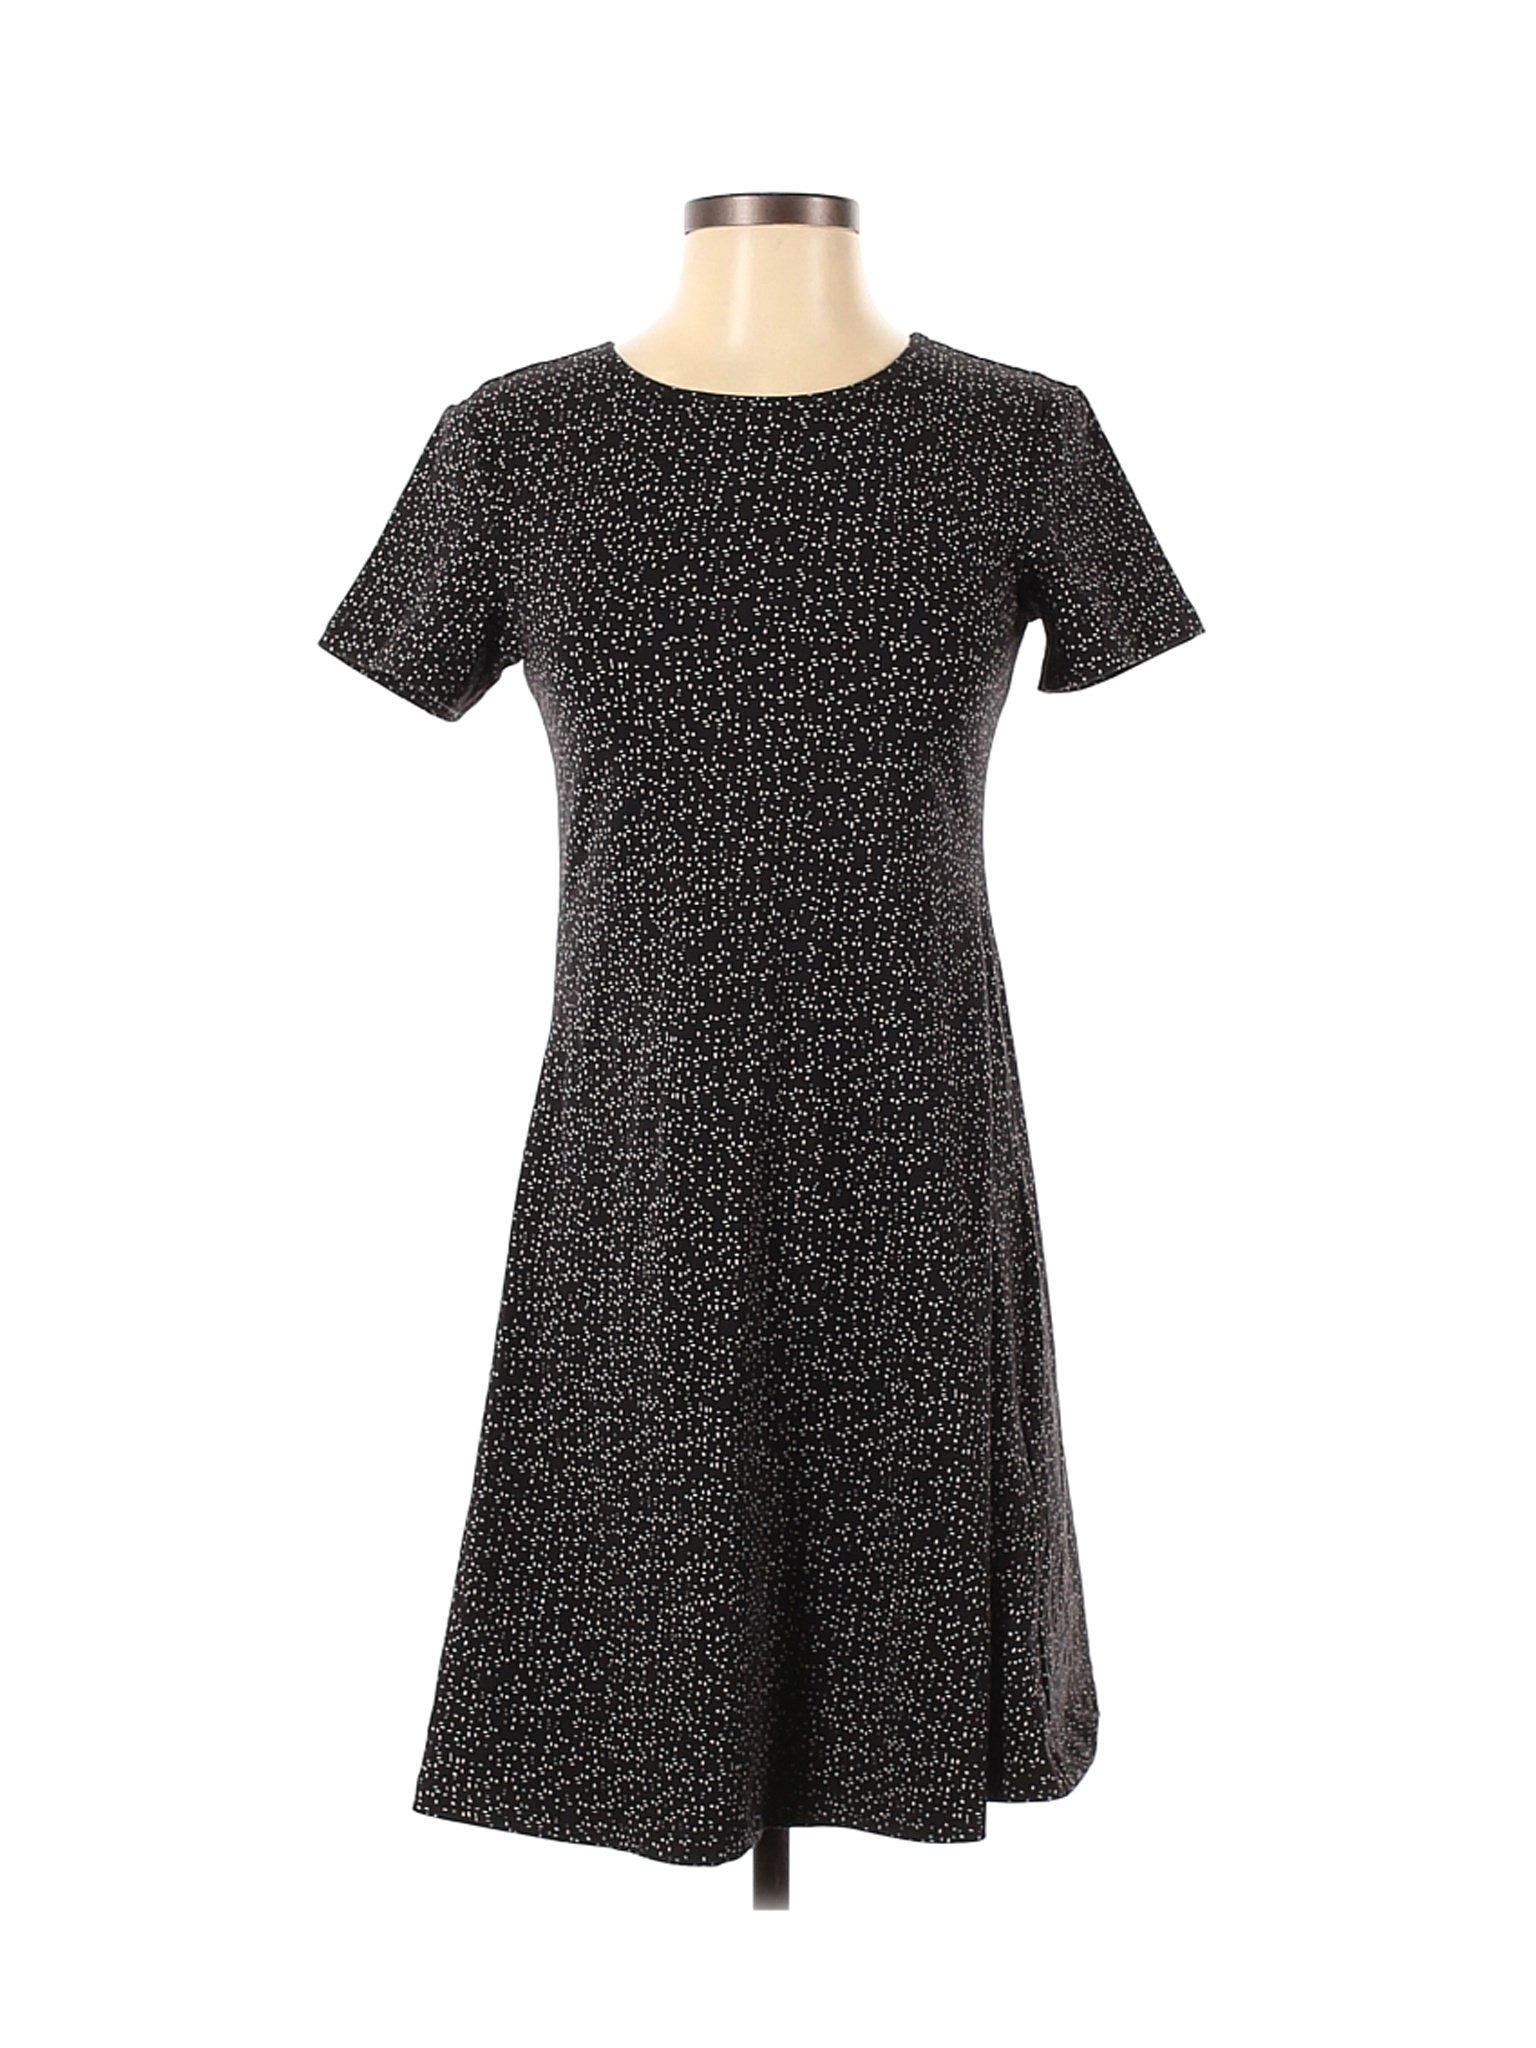 Uniqlo Women Black Casual Dress S | eBay